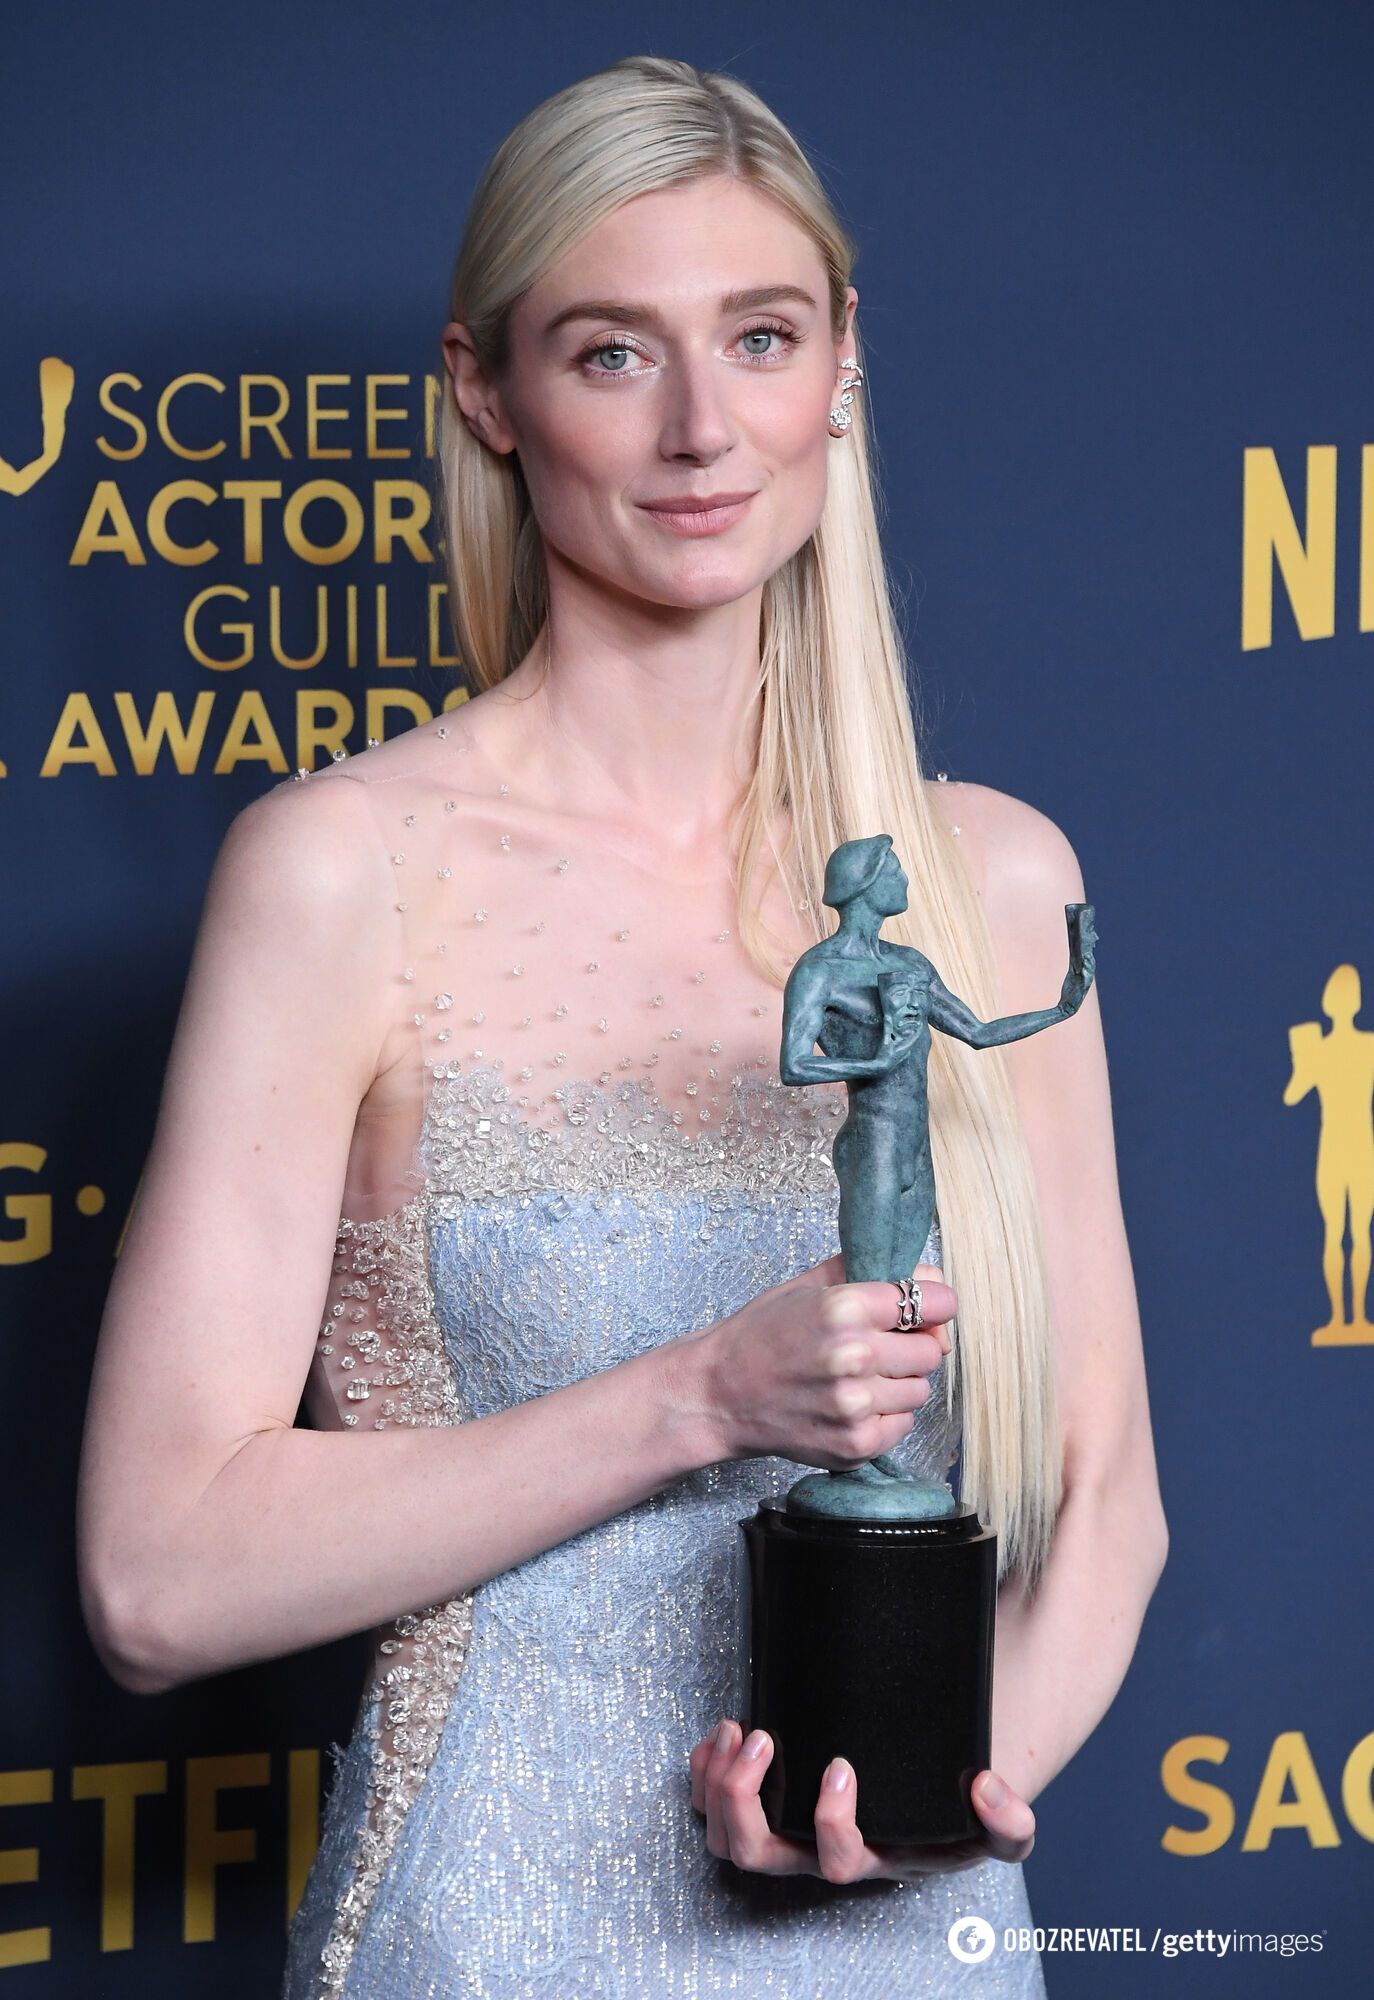 Ogłoszono zwycięzców nagród Amerykańskiej Gildii Aktorów Ekranowych: ''Oppenheimer'' ponownie pokonał wszystkich. Pełna lista triumfatorów